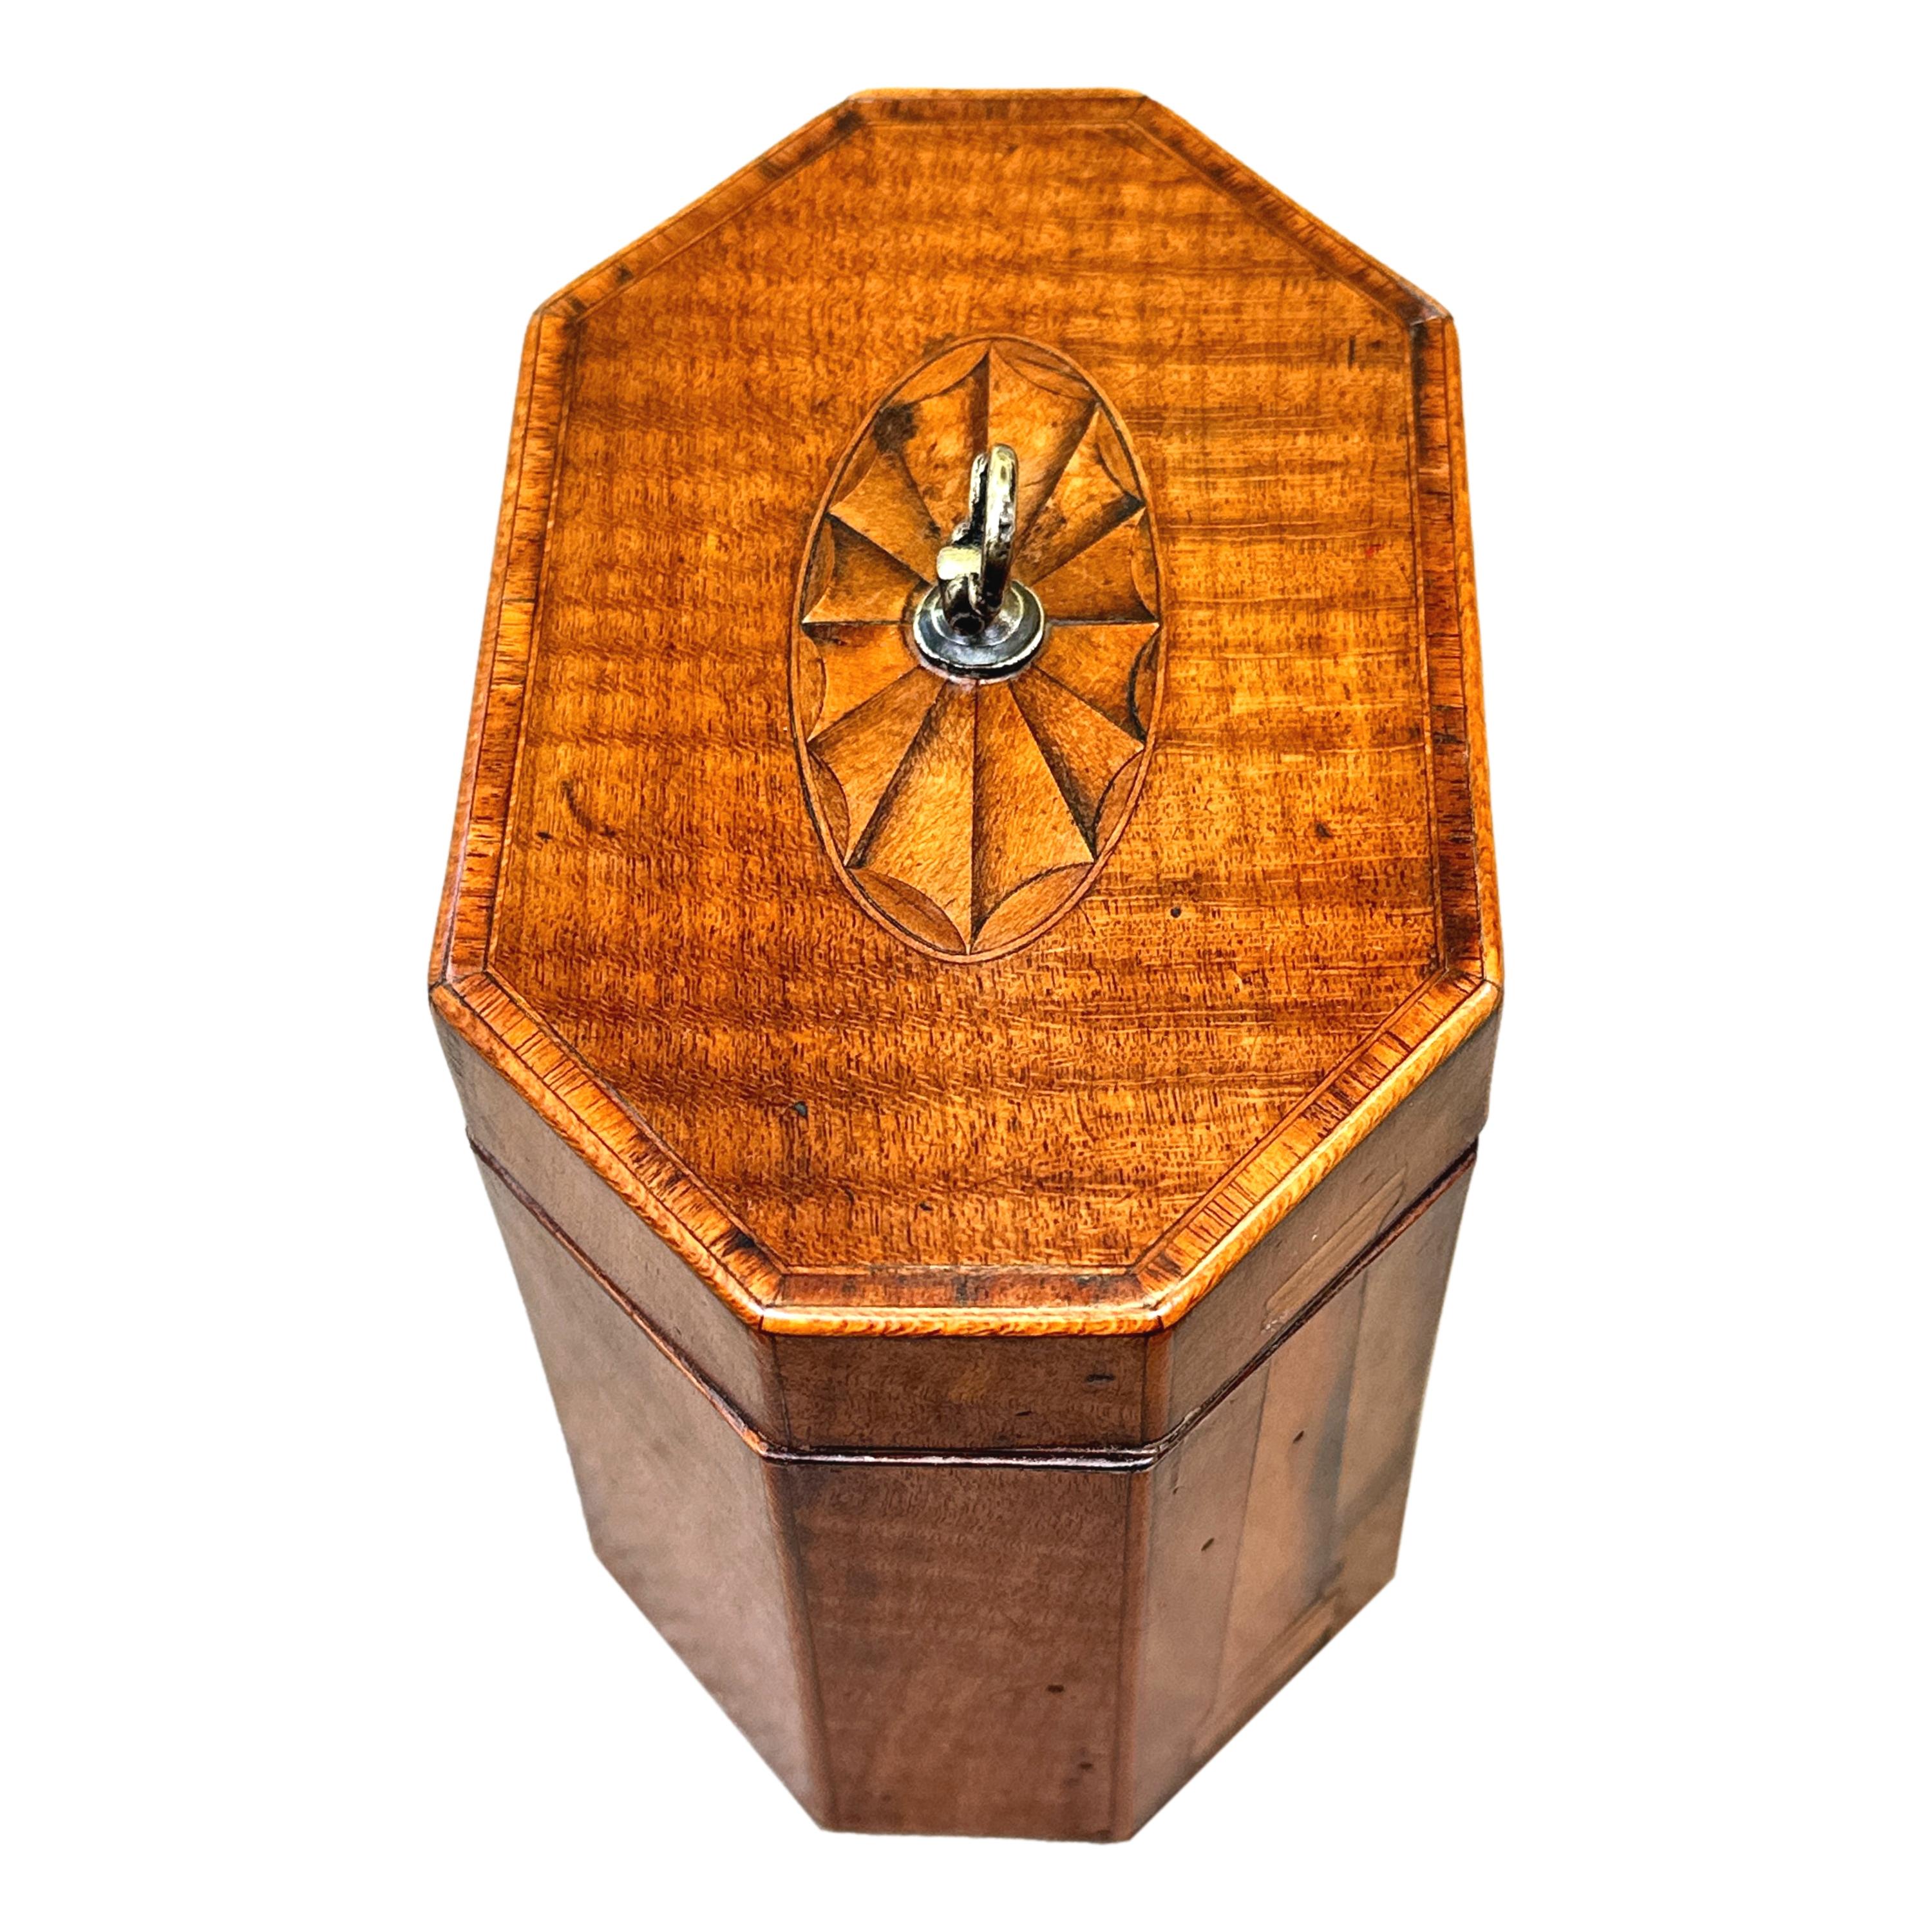 Inusual caja de té octogonal de caoba de finales del siglo XVIII, época de Jorge III, con una atractiva y poco común decoración de abanicos y pilares incrustados, tapa con bisagras que cierra un compartimento con tapa.

Durante los siglos XVIII y